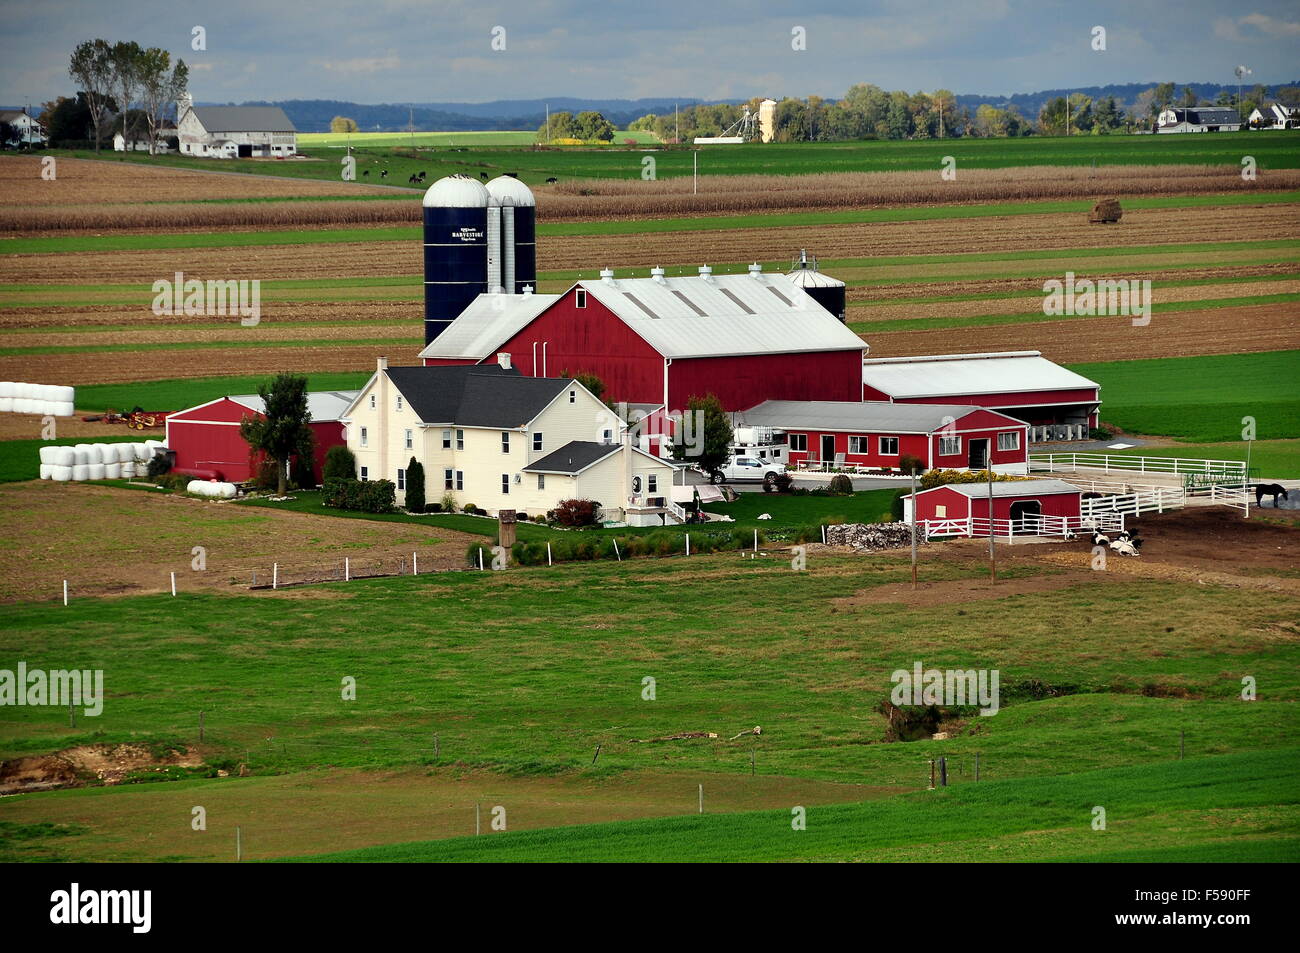 Lancaster County, Pennsylvania: Ein großer amischen Bauernhof Komplex mit Bauernhaus, Scheunen, Silos und umliegenden Ländereien Stockfoto